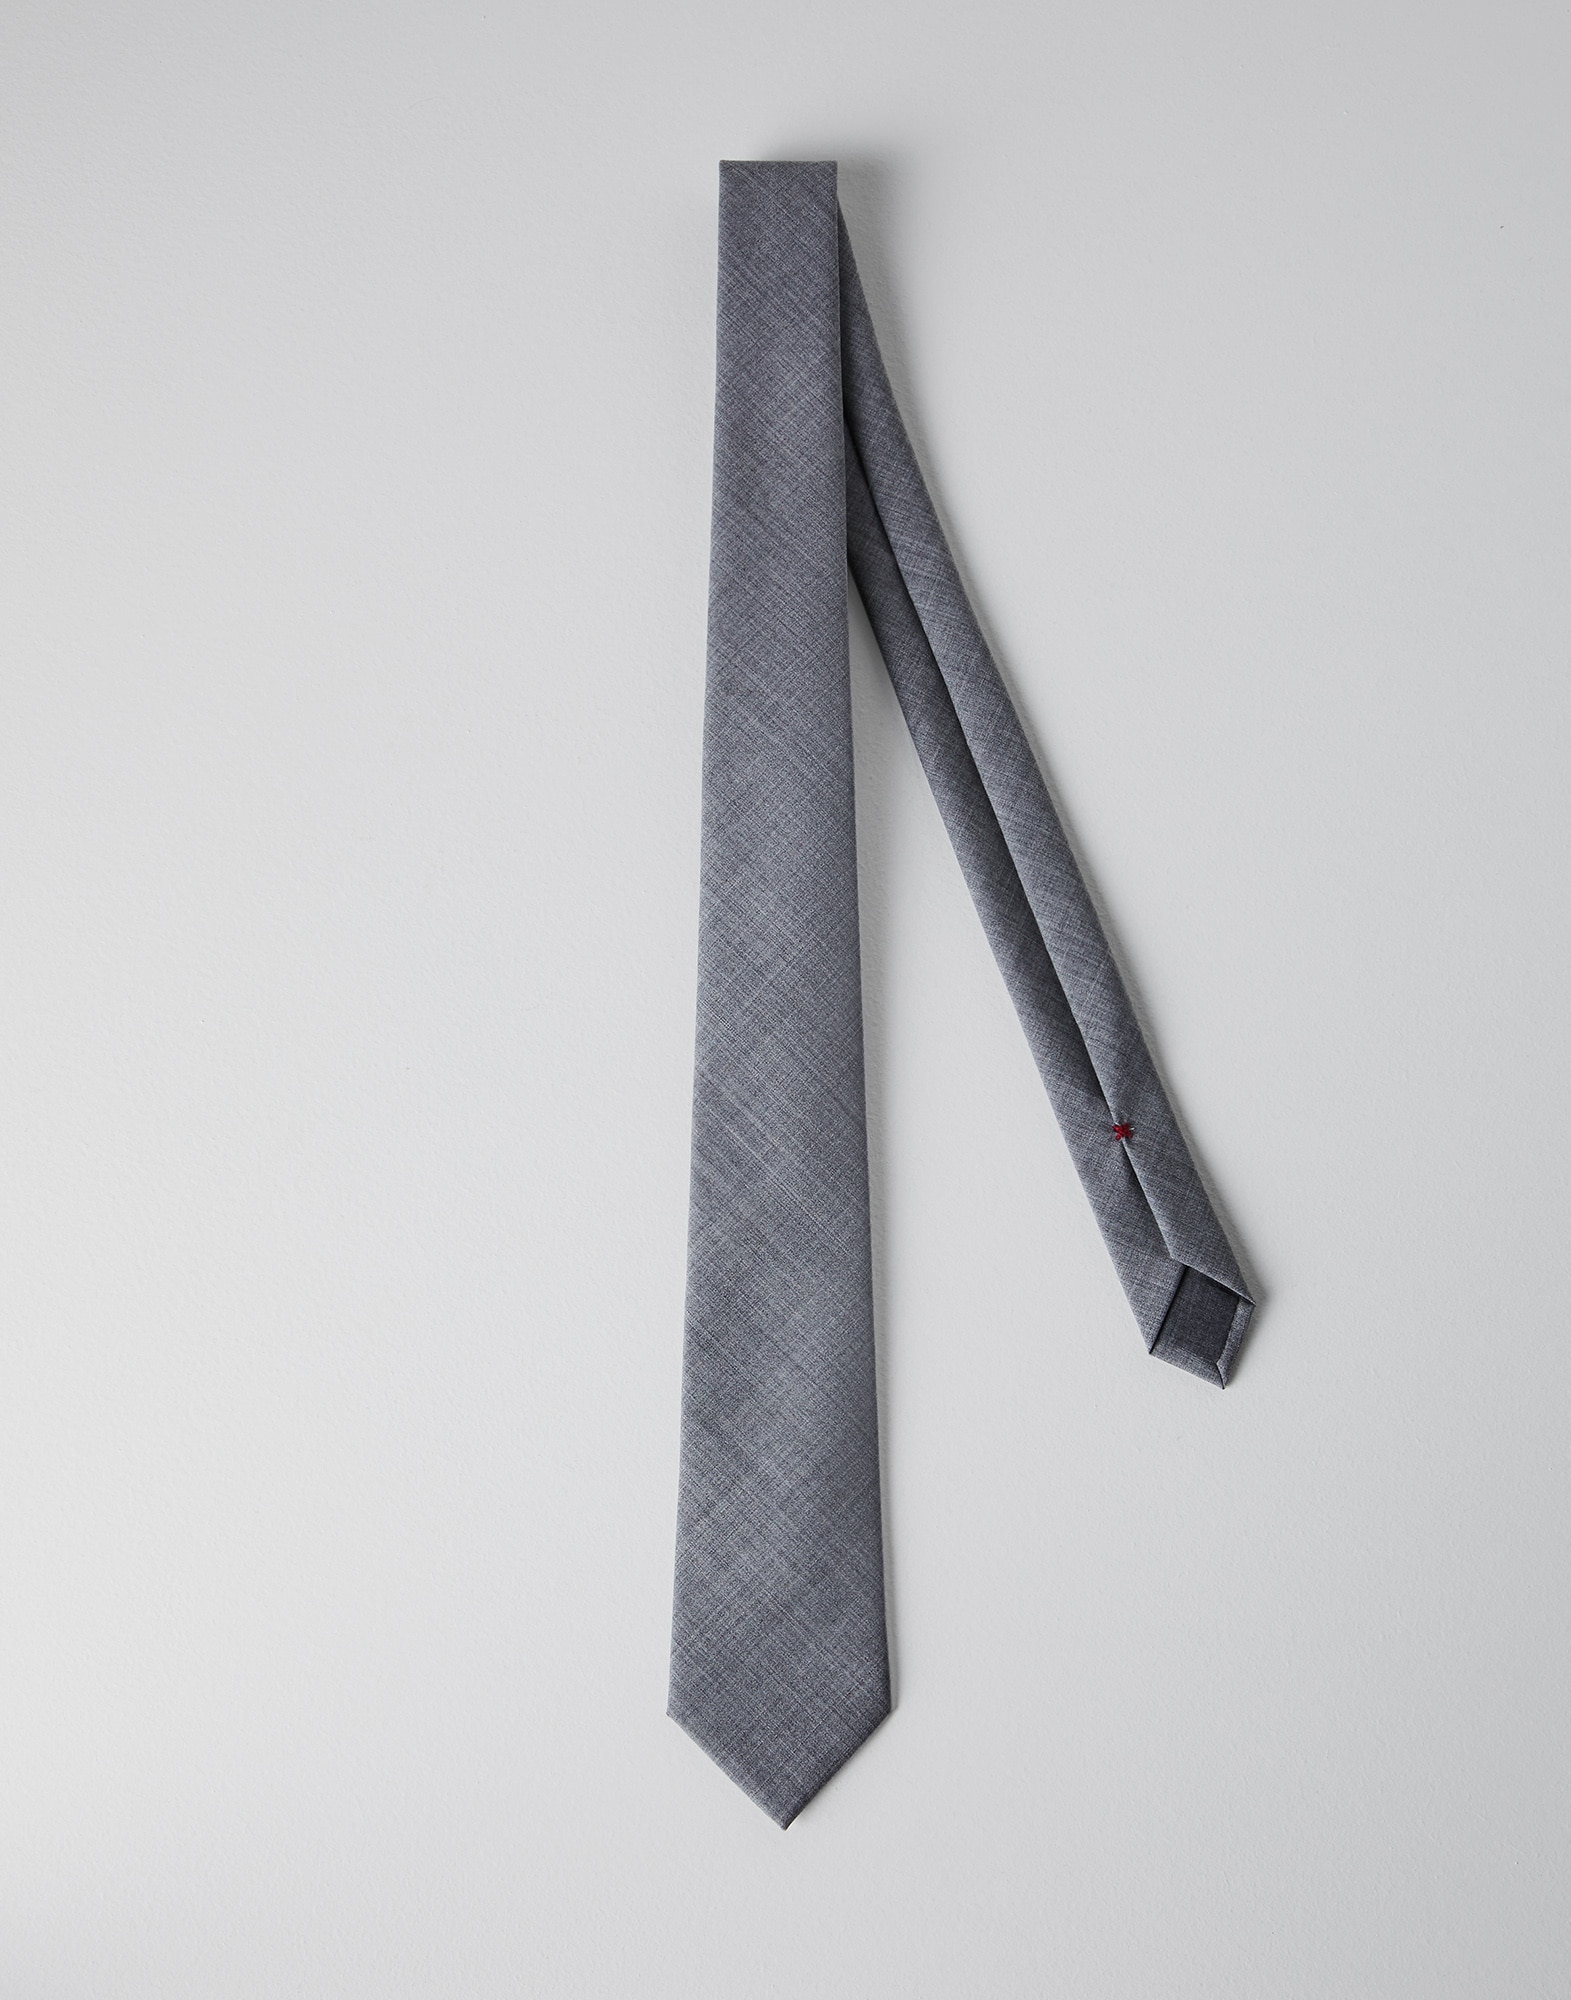 Wool necktie